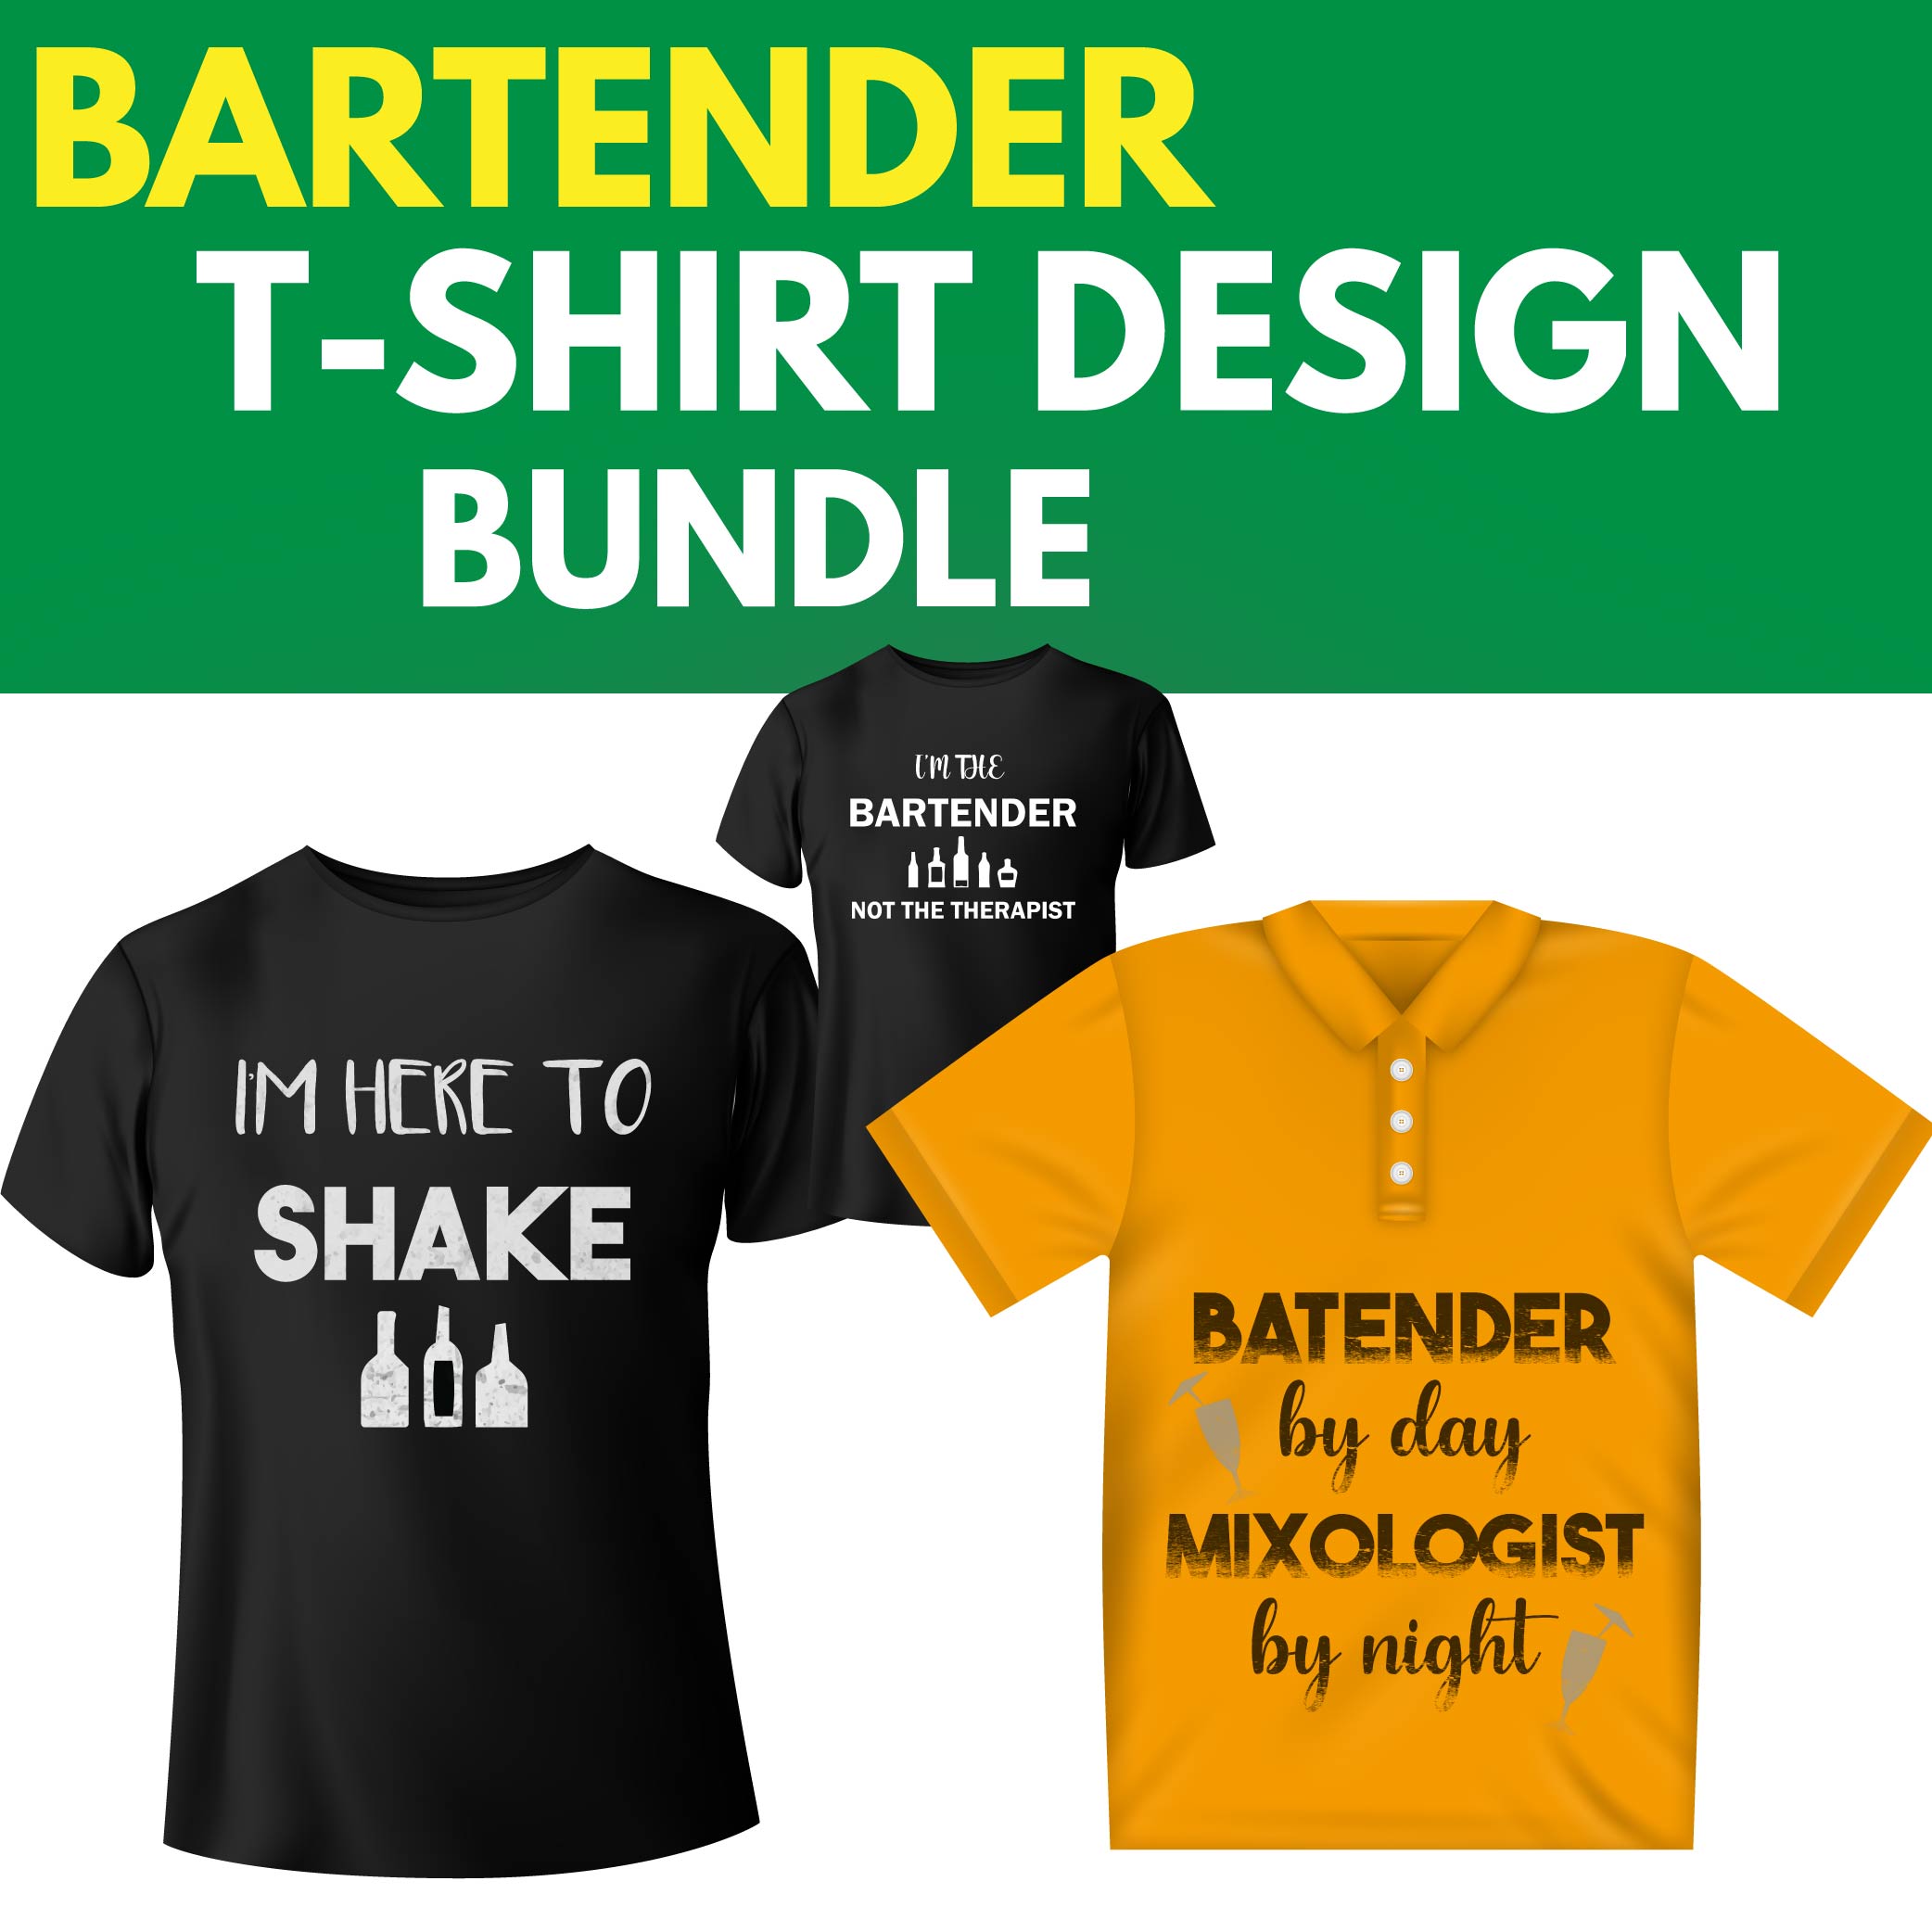 Bartender T-Shirt Design Bundle [5 items] cover image.